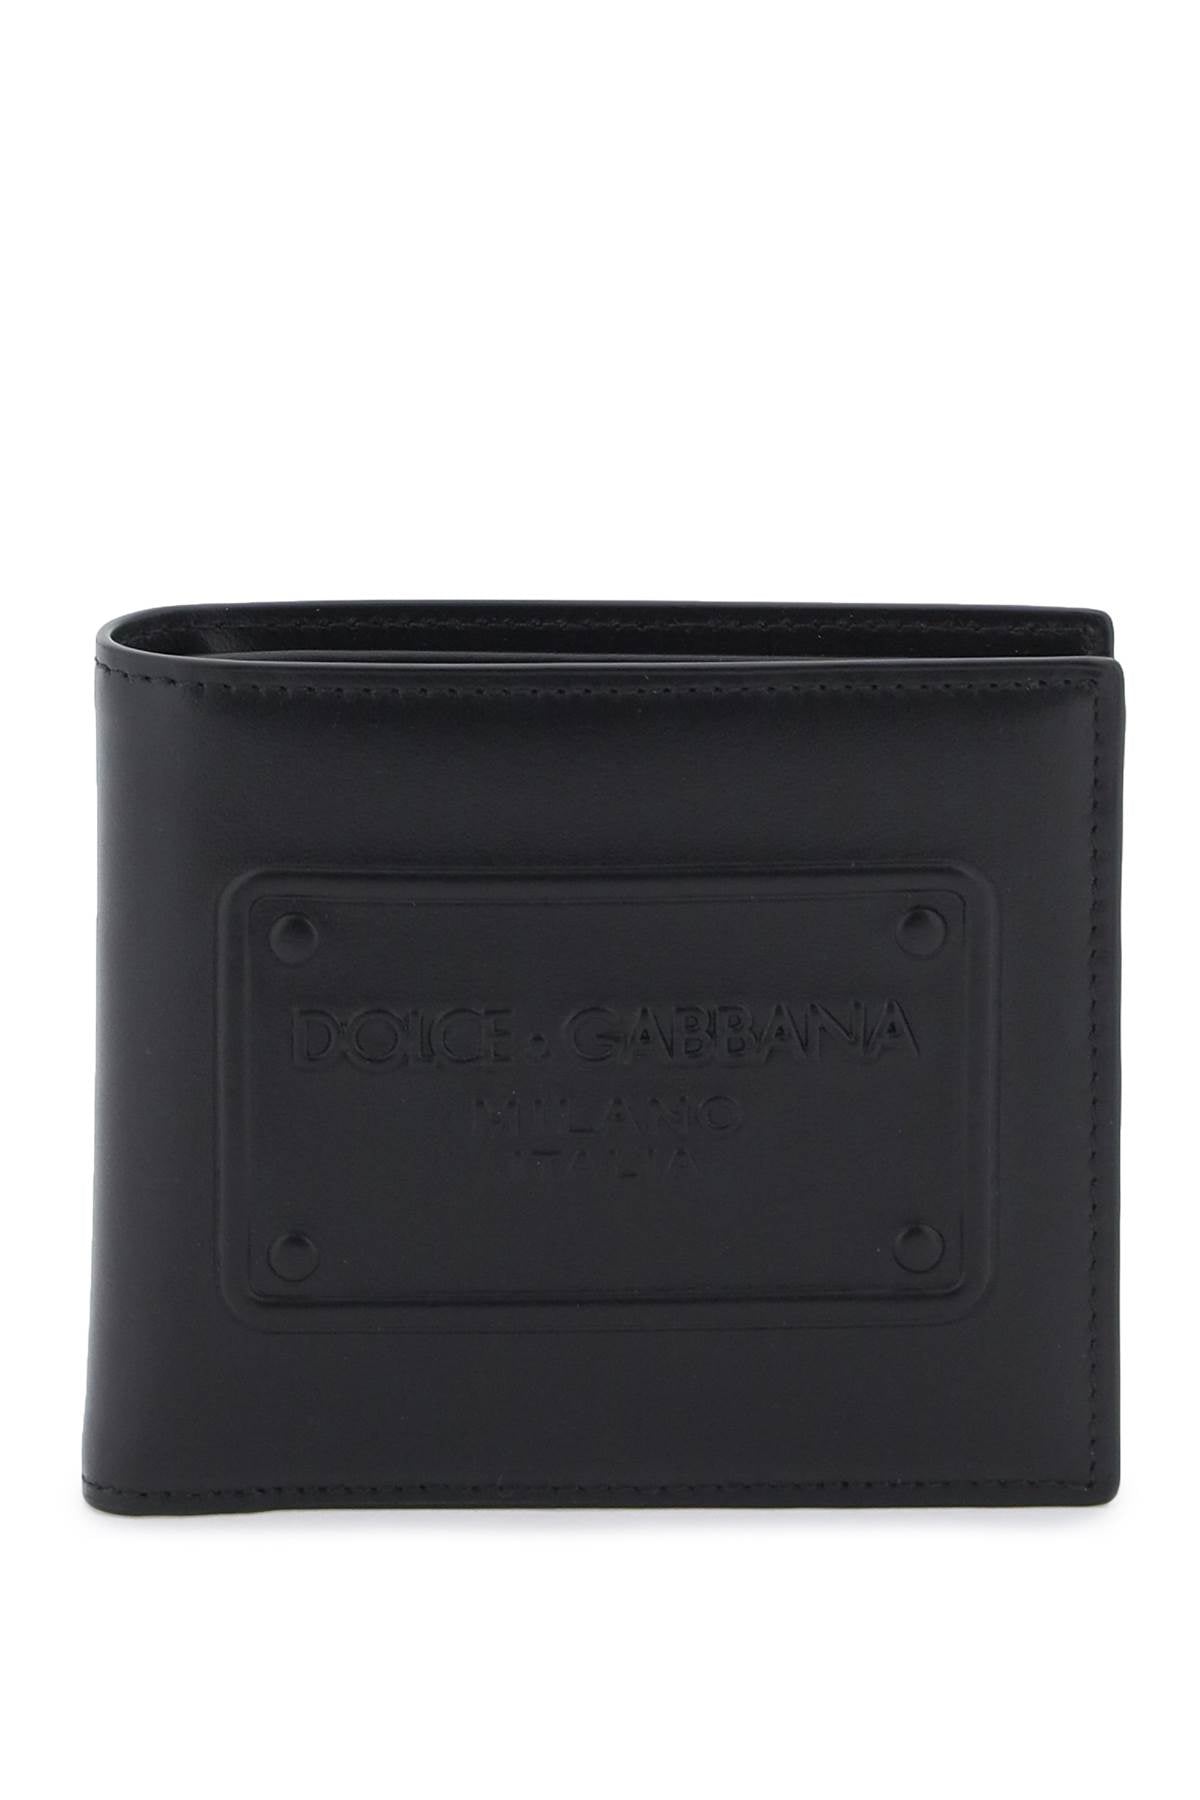 Dolce & Gabbana Dolce & gabbana leather bi-fold wallet